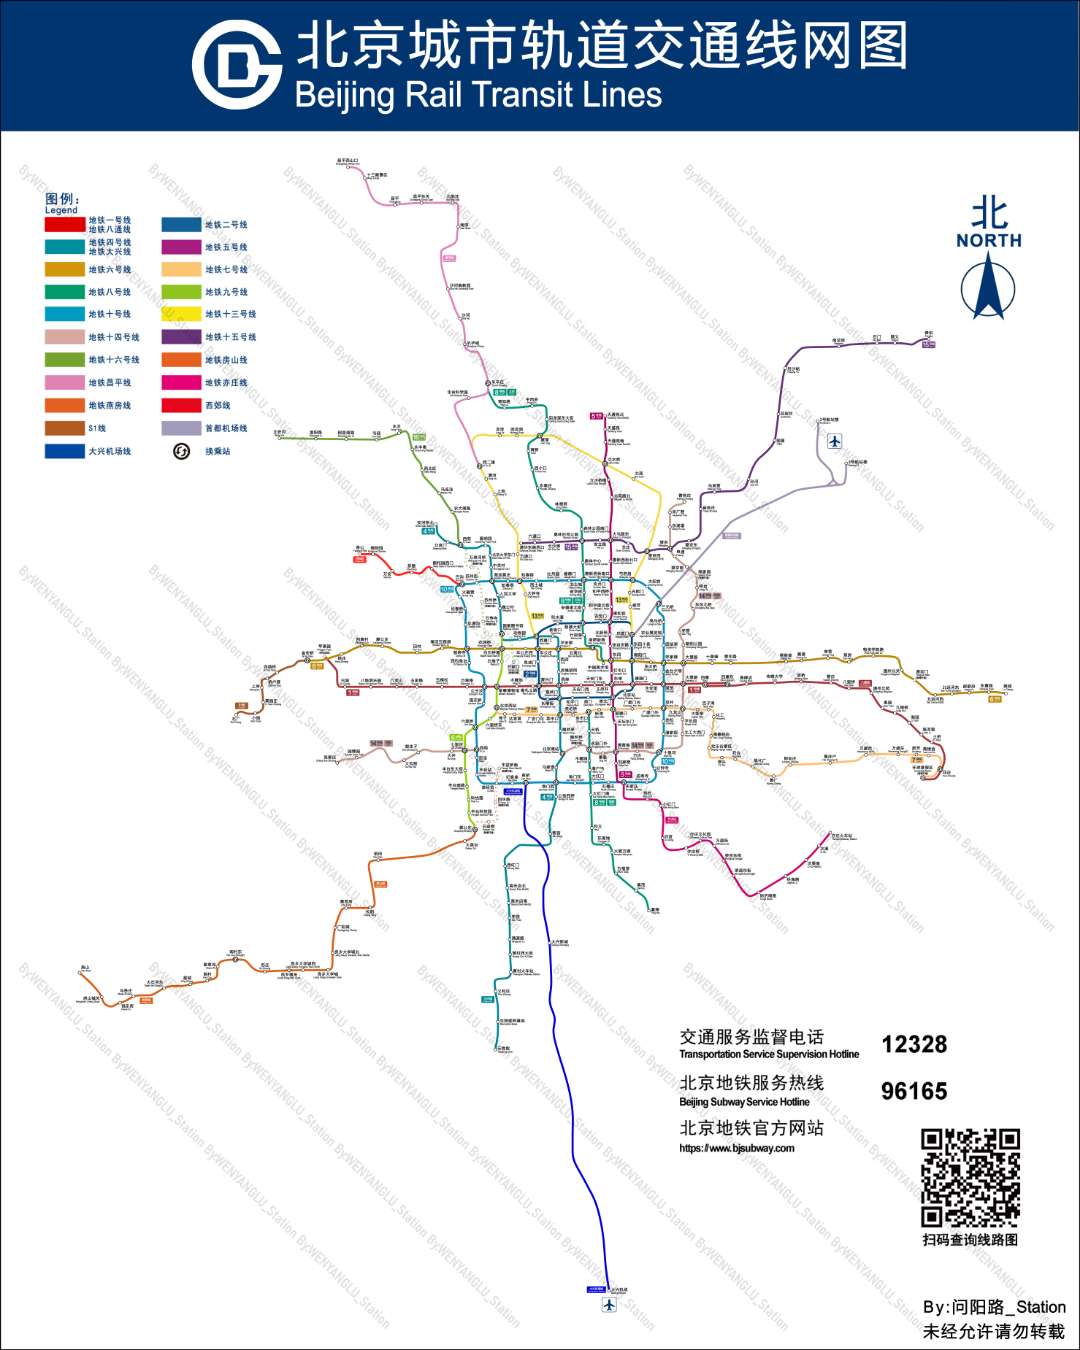 北京地铁北京城市轨道交通线网图仿官方实际比例持续更新